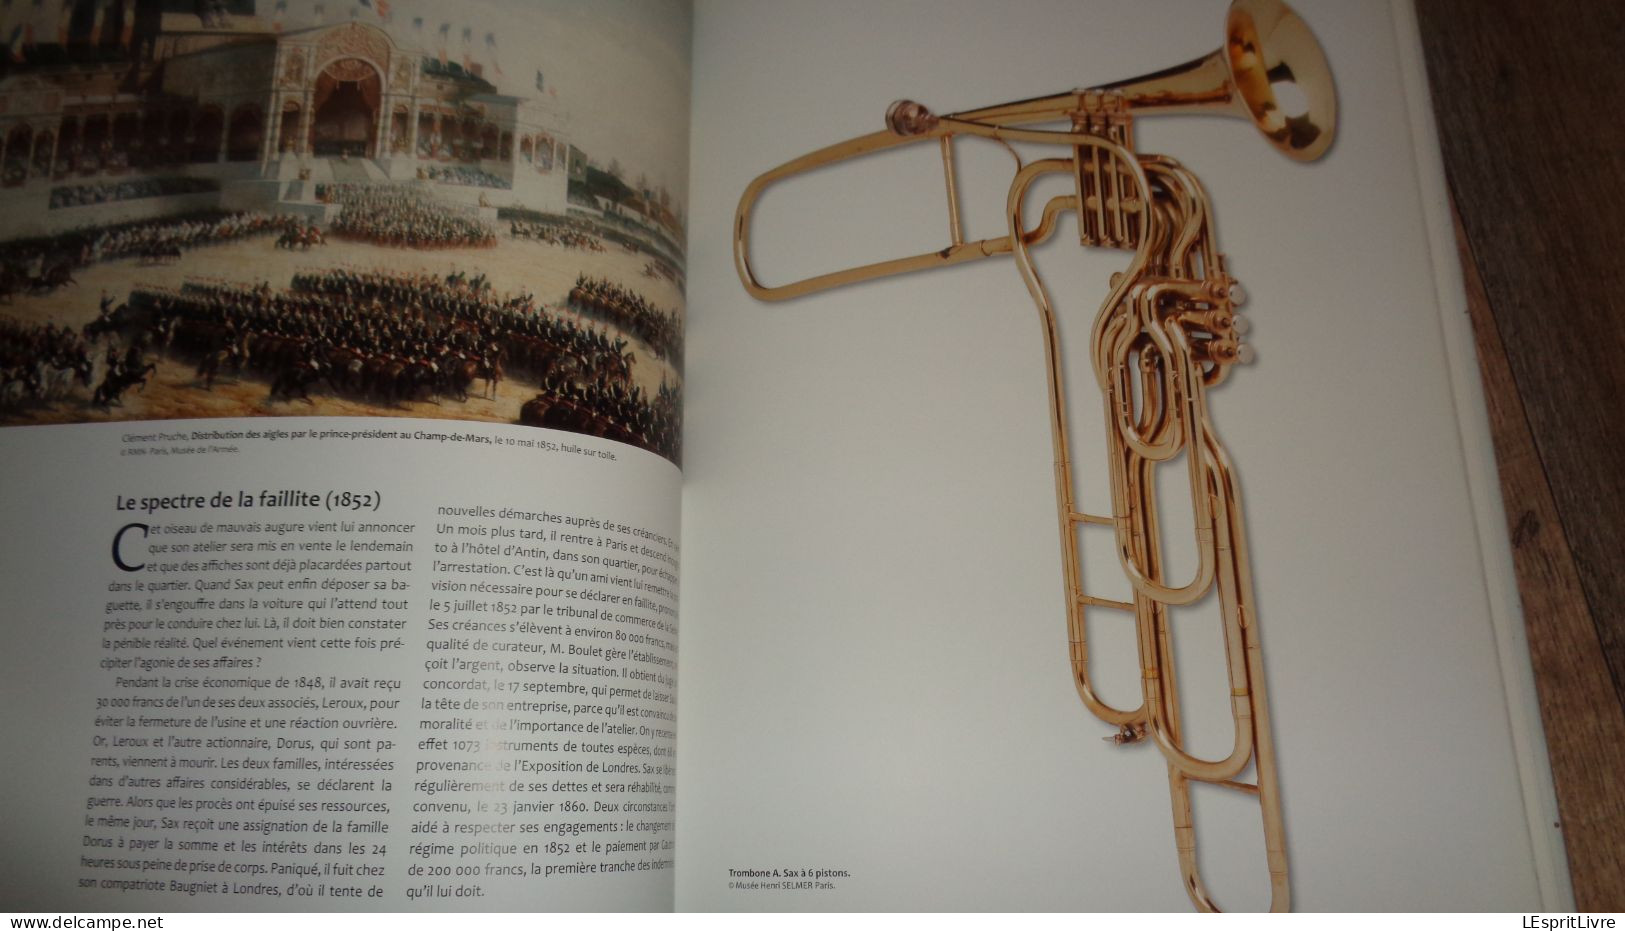 ADOLPHE SAX Sa Vie Son Génie Inventif Ses Saxophones Une Révolution Musicale Dinant Musique Saxo Saxophone Instruments